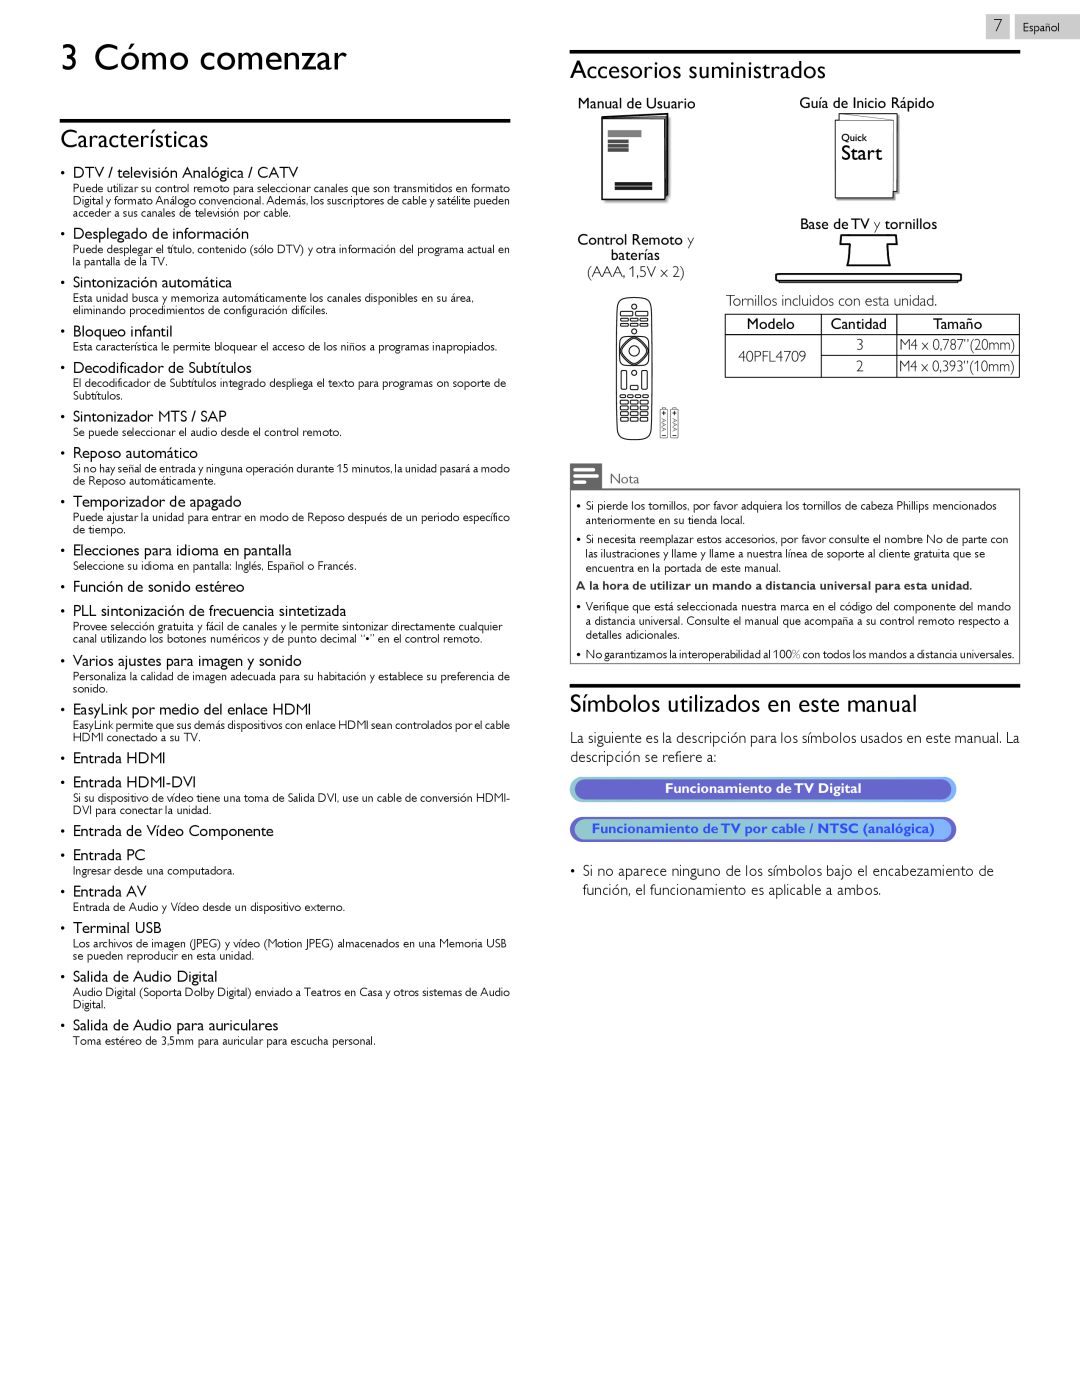 Philips 40PFL4709 3 Cómo comenzar, Características, Accesorios suministrados, Símbolos utilizados en este manual 